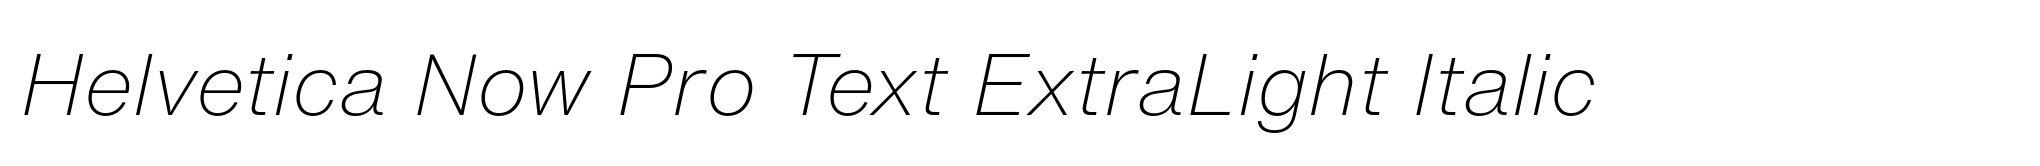 Helvetica Now Pro Text ExtraLight Italic image